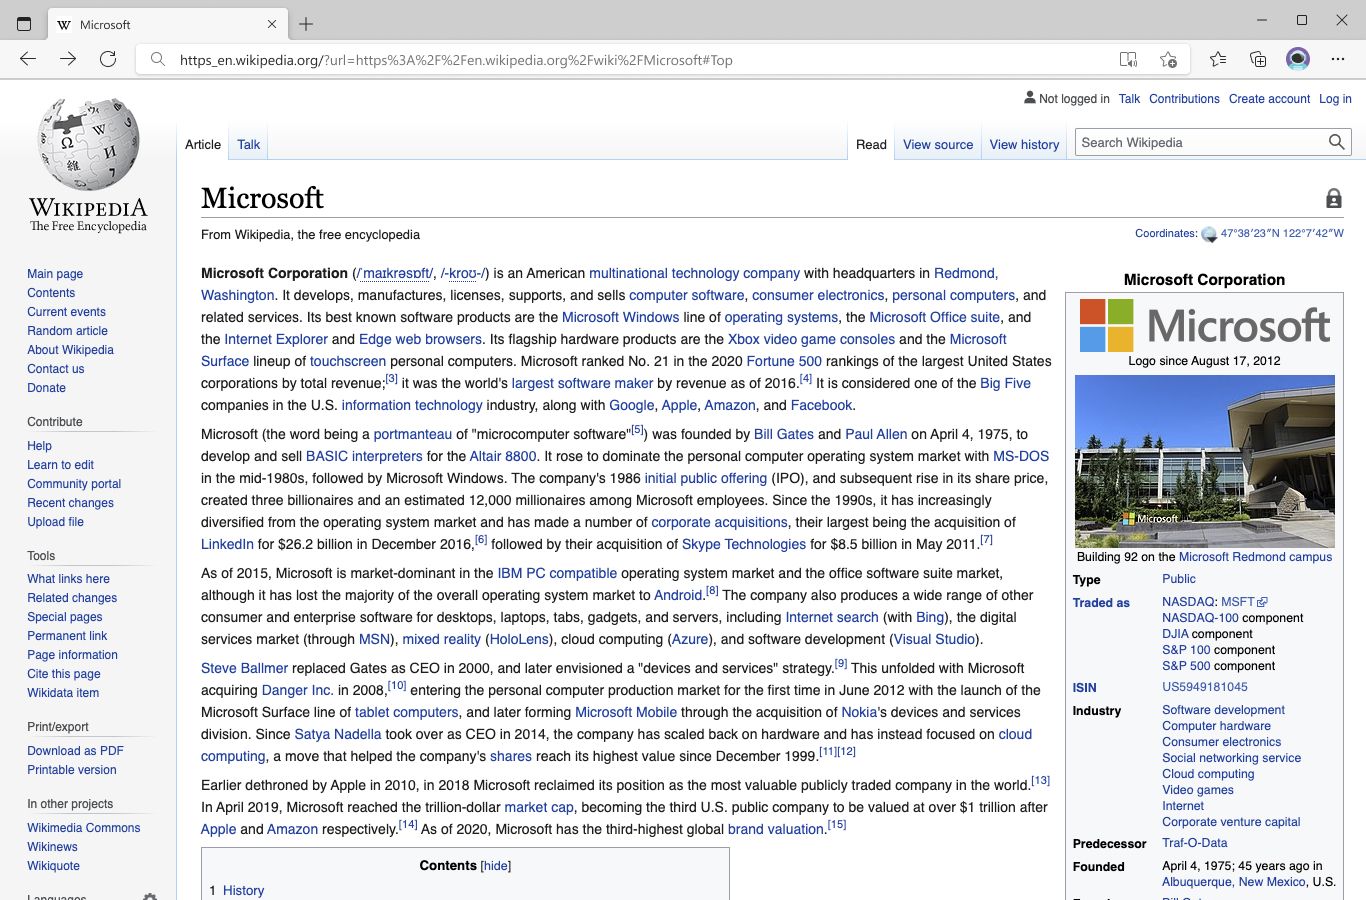 Microsoft EDG иммерсивное средство чтения. Поддержите Википедию.